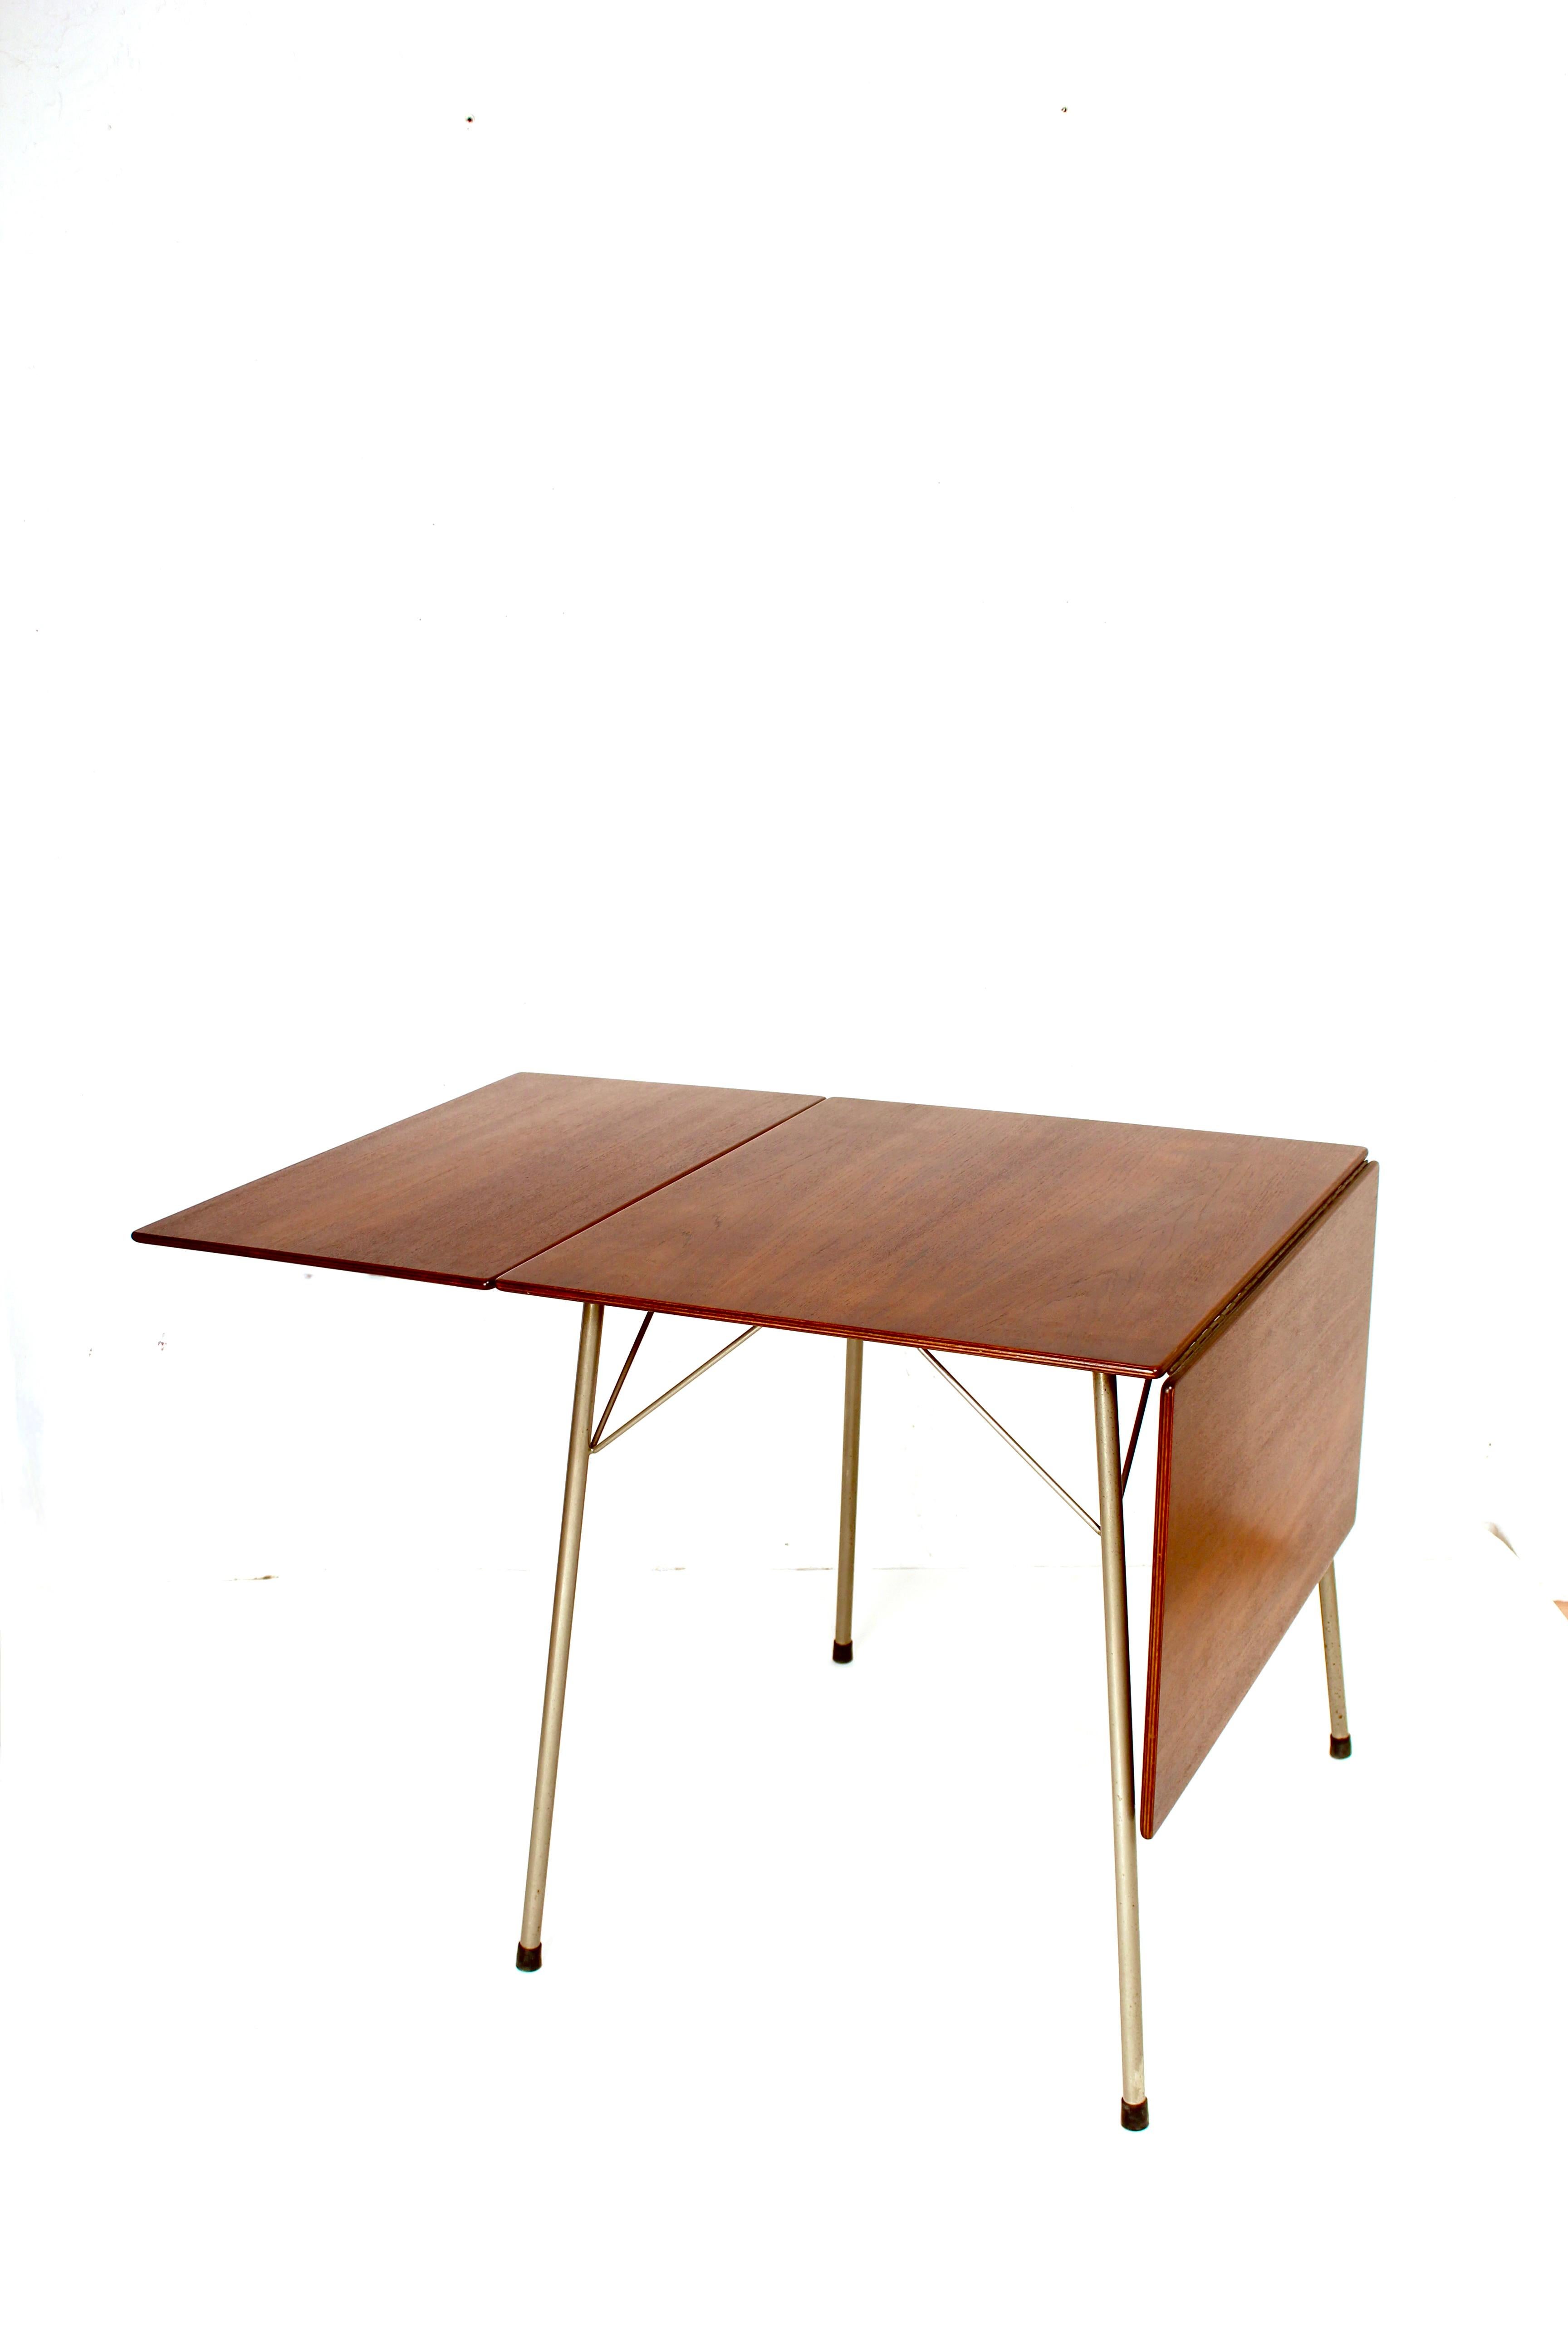 Schöner kleiner Klapptisch Modell 3601, entworfen von Arne Jacobsen für Fritz Hansen, Dänemark, 1952. Dieser Tisch hat eine klappbare Platte aus Teakholz und verchromte Metallrohrbeine. Dieser seltene Tisch hat eine sehr schöne Größe und ist leicht